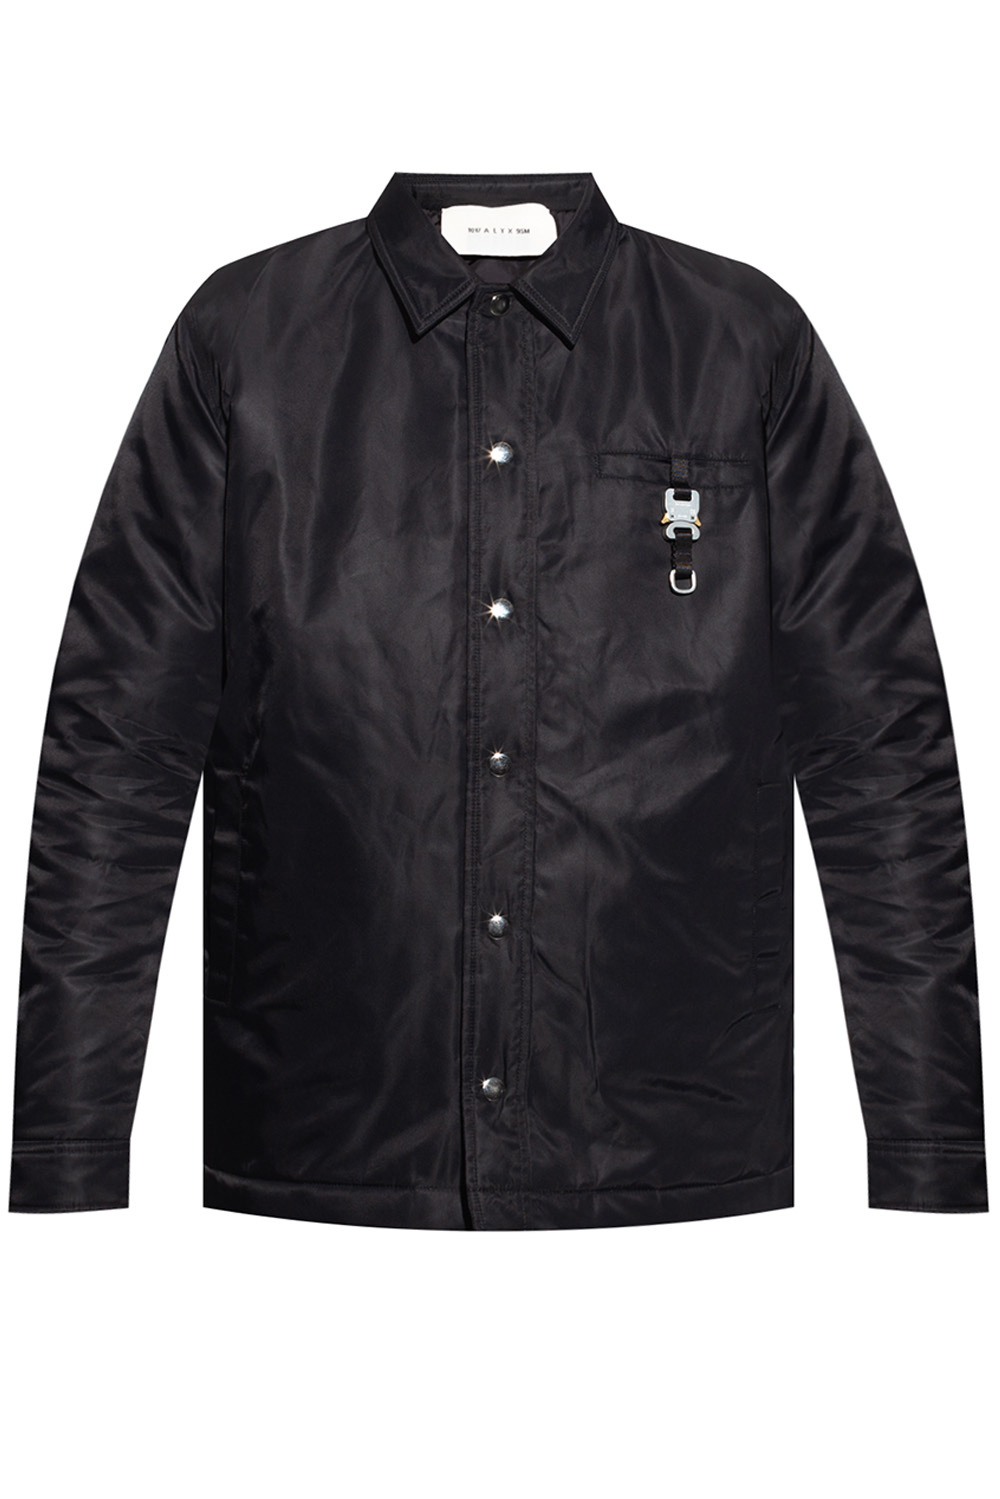 Black Jacket with buckle detail 1017 ALYX 9SM - Vitkac Canada